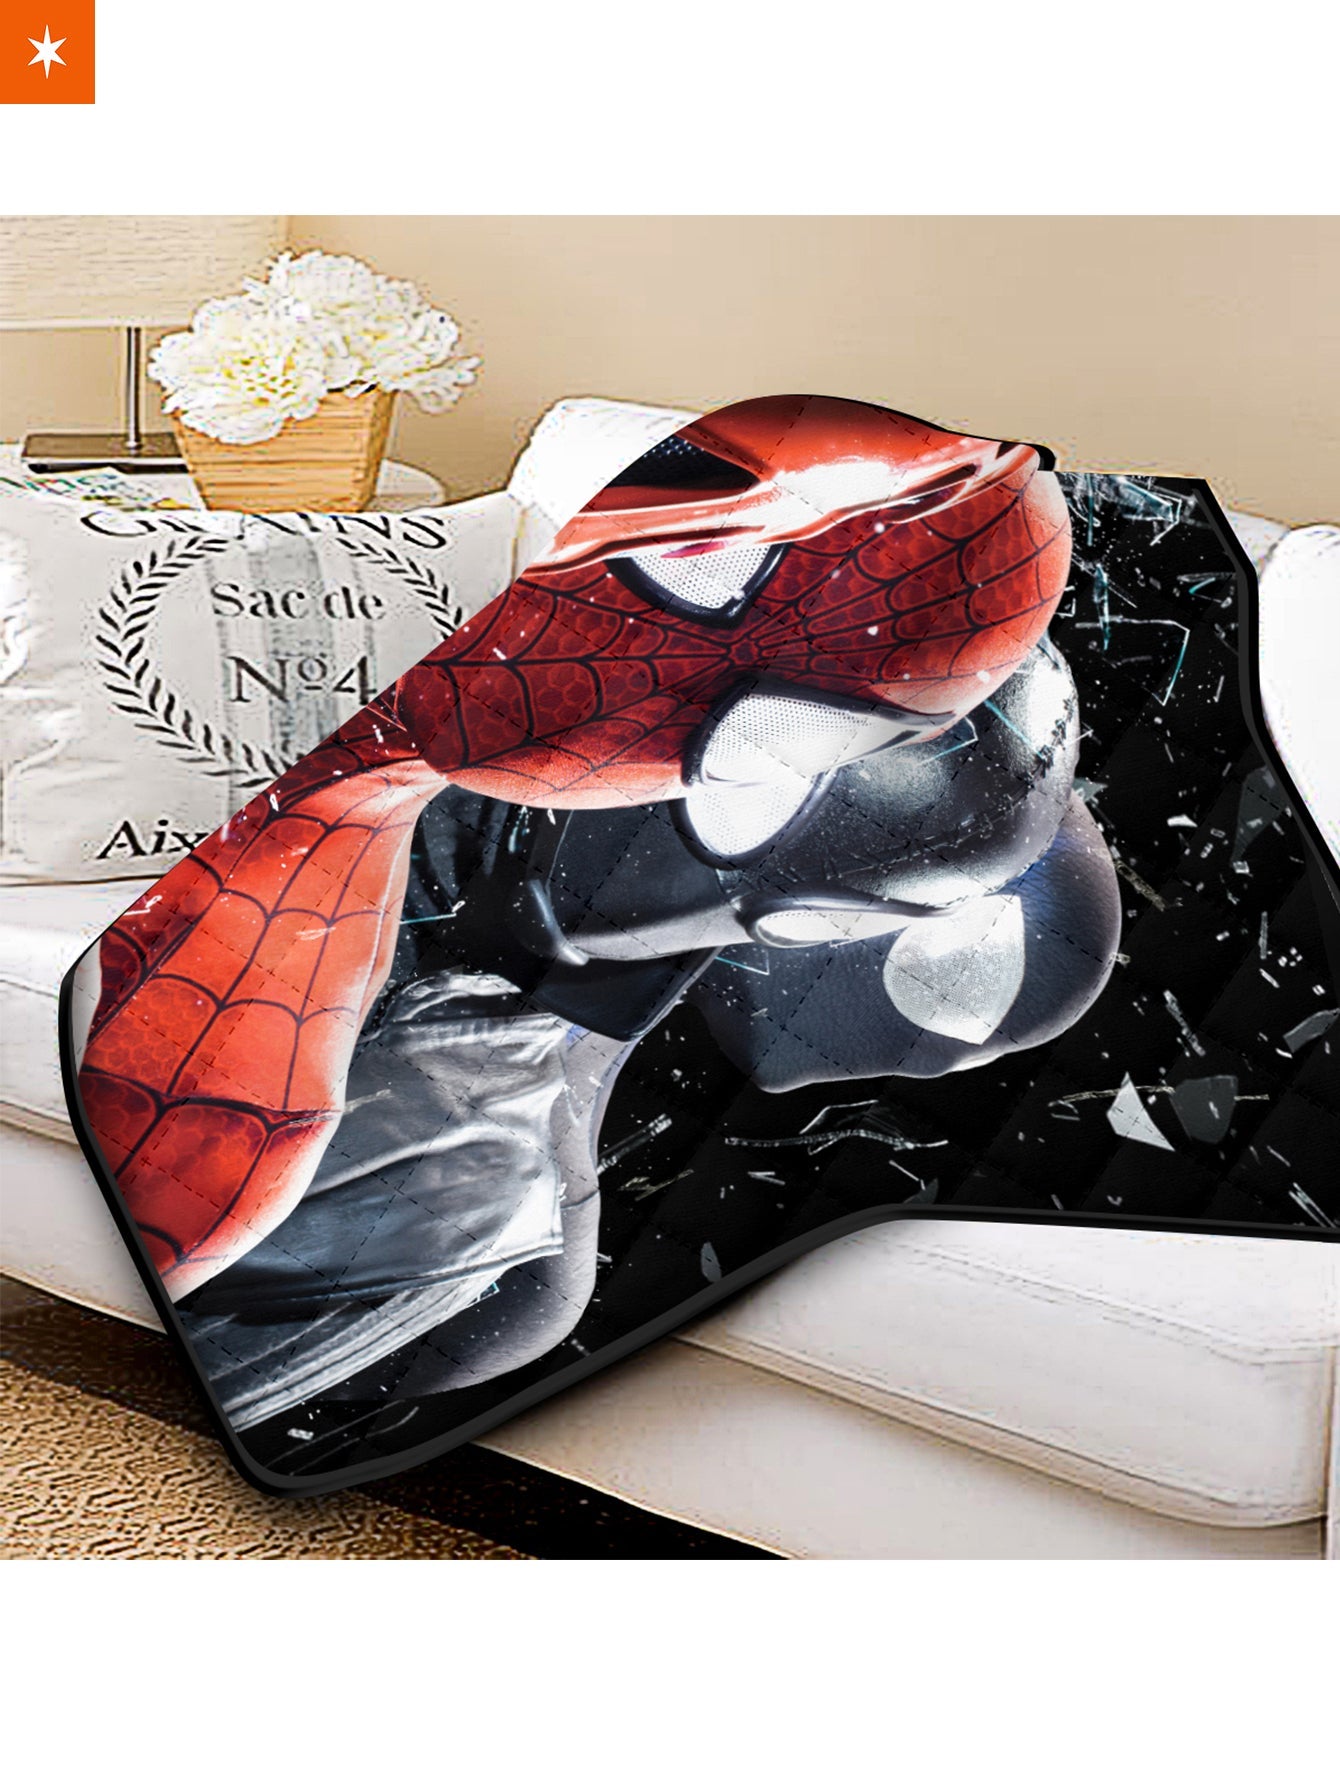 Fandomaniax - Multiverse Spider-man Quilt Blanket